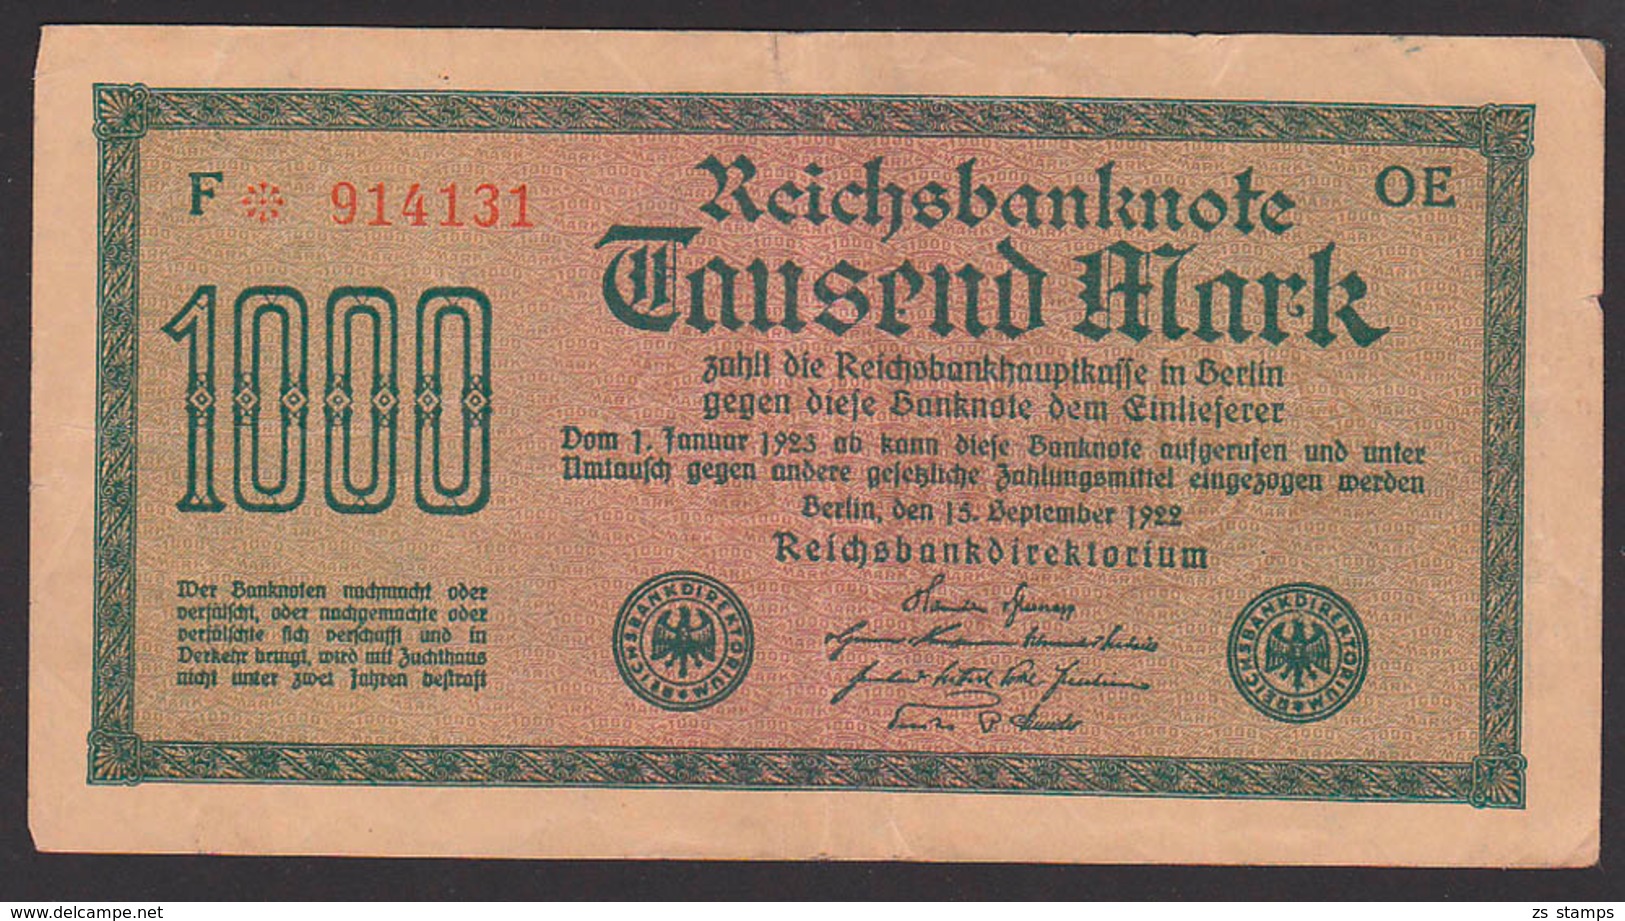 Deutsches Reich, Reichsbanknote 1 Tausend Mark, Ausgabe 15. September 1922, Serie OE - 1000 Mark